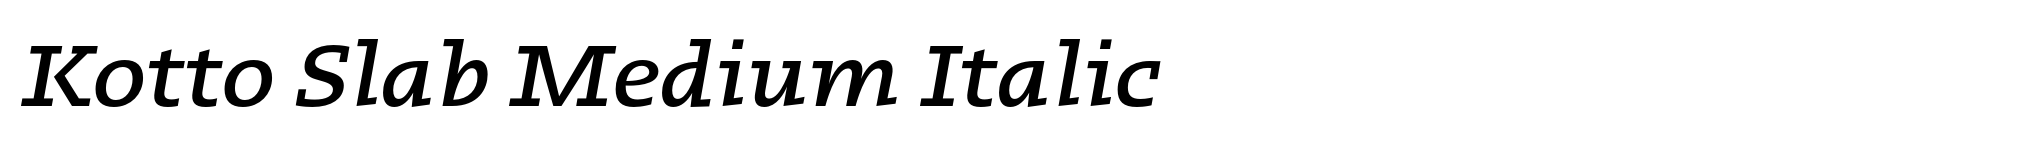 Kotto Slab Medium Italic image